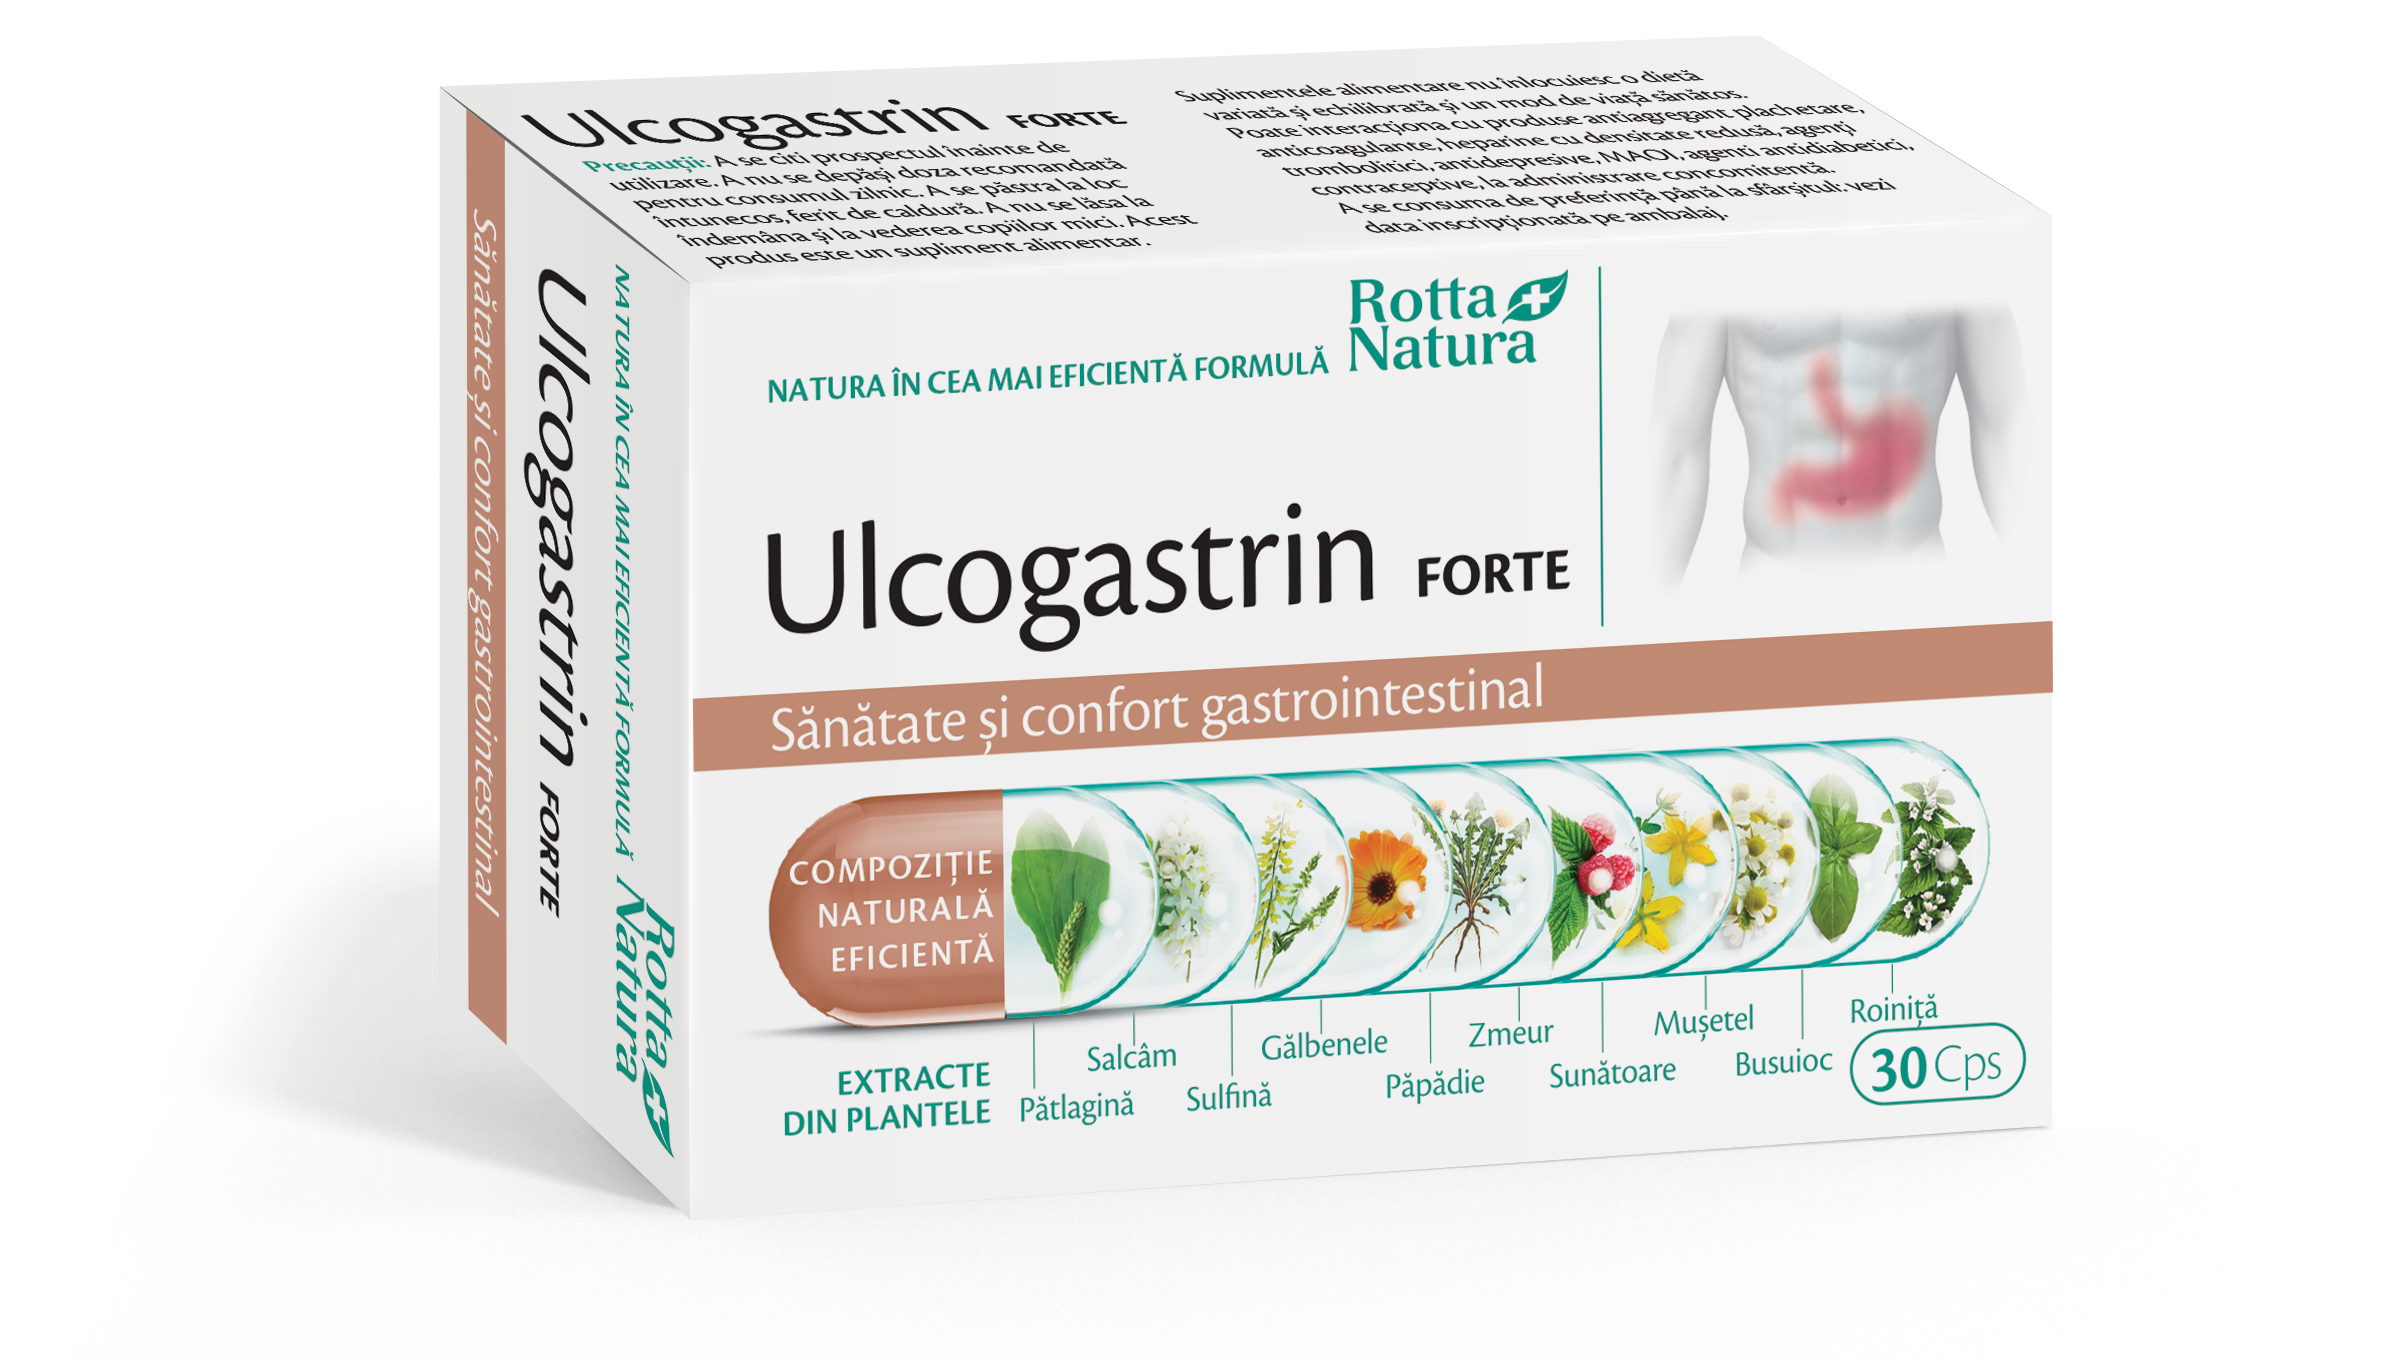 Antiacide - Ulcogastrin forte, 30 capsule, Rotta Natura, sinapis.ro